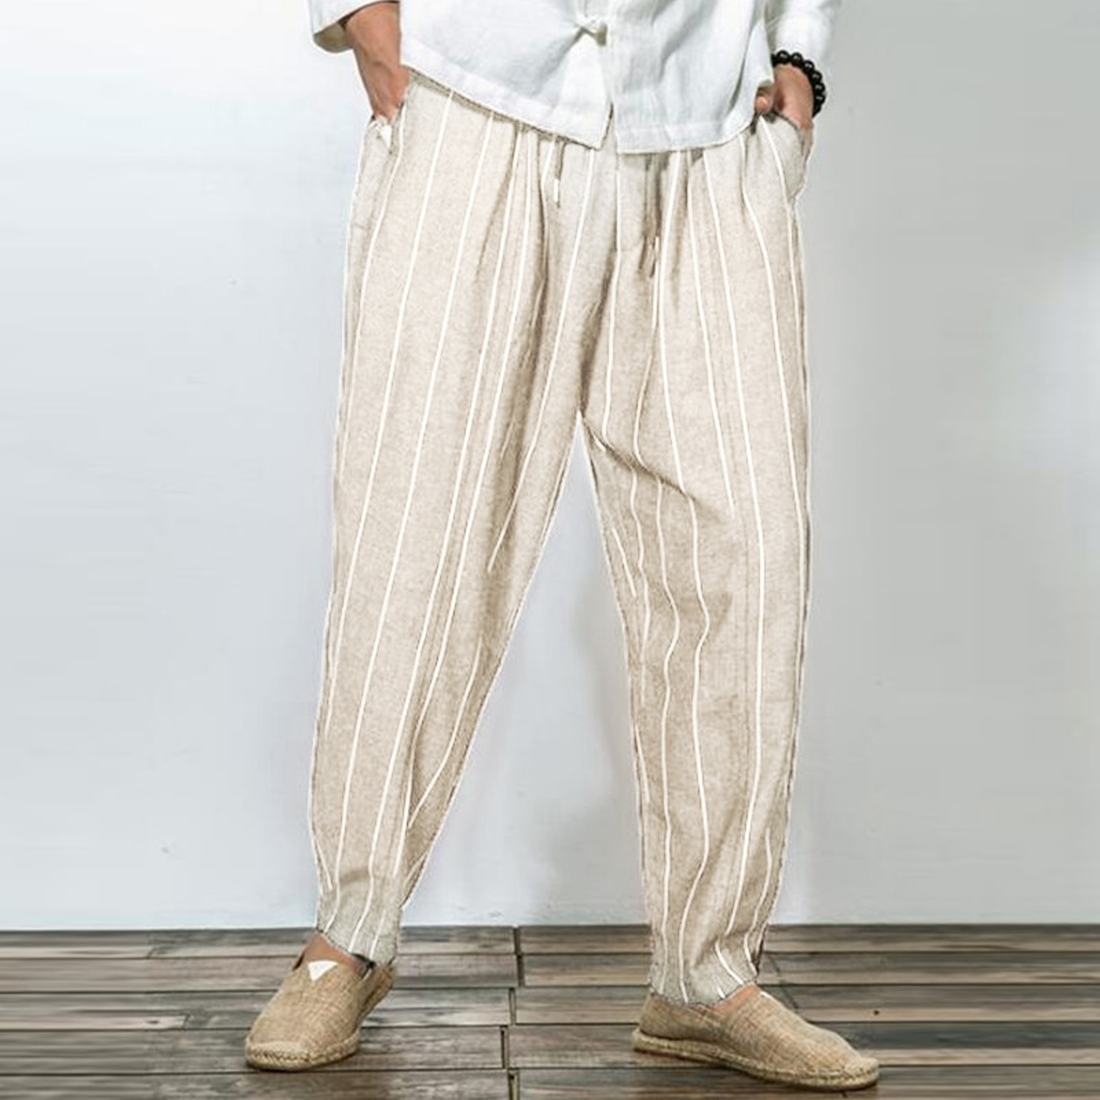 Men's Casual Striped Cotton Pants | Plus Size